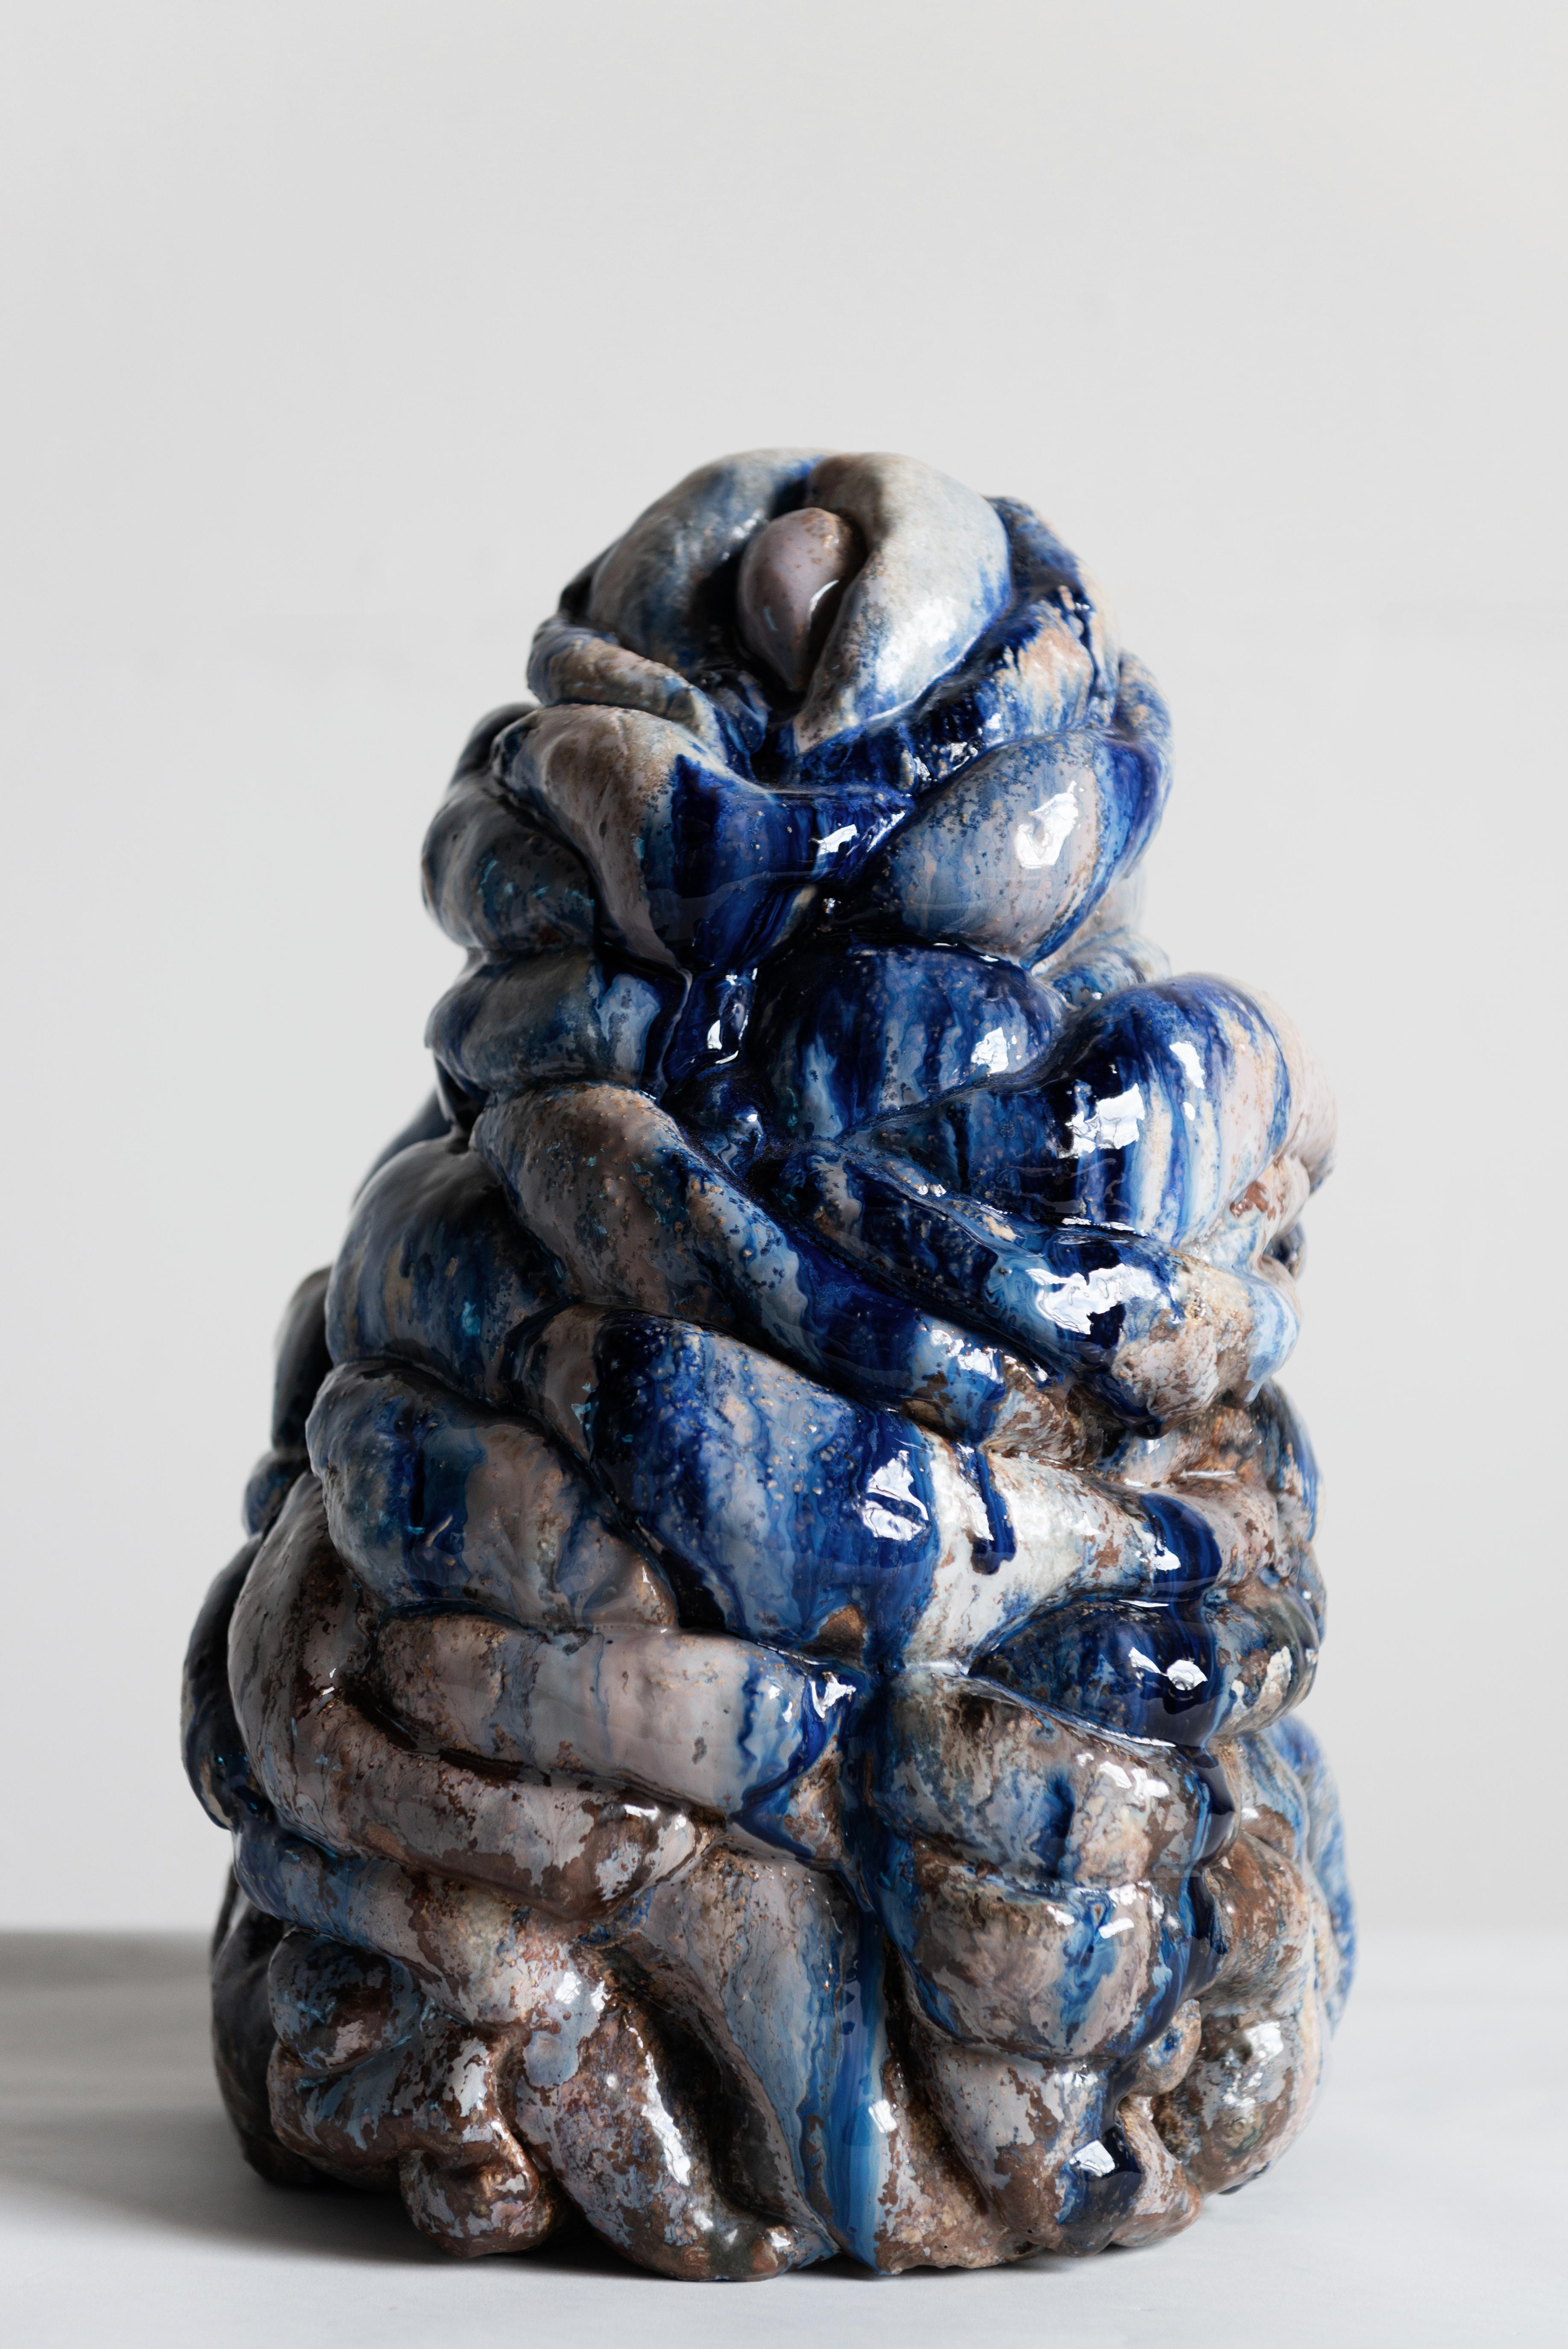 Blaue Plastikskulptur von Natasja Alers, 2019.
Abmessungen: 44 x 28 x 24 cm
MATERIAL: Keramik, Glasuren.

Die bildende Künstlerin Natasja Alers (Den Haag, 1987) ist Absolventin der Gerrit Rietveld Akademie im Bereich Keramik. Alers fertigt